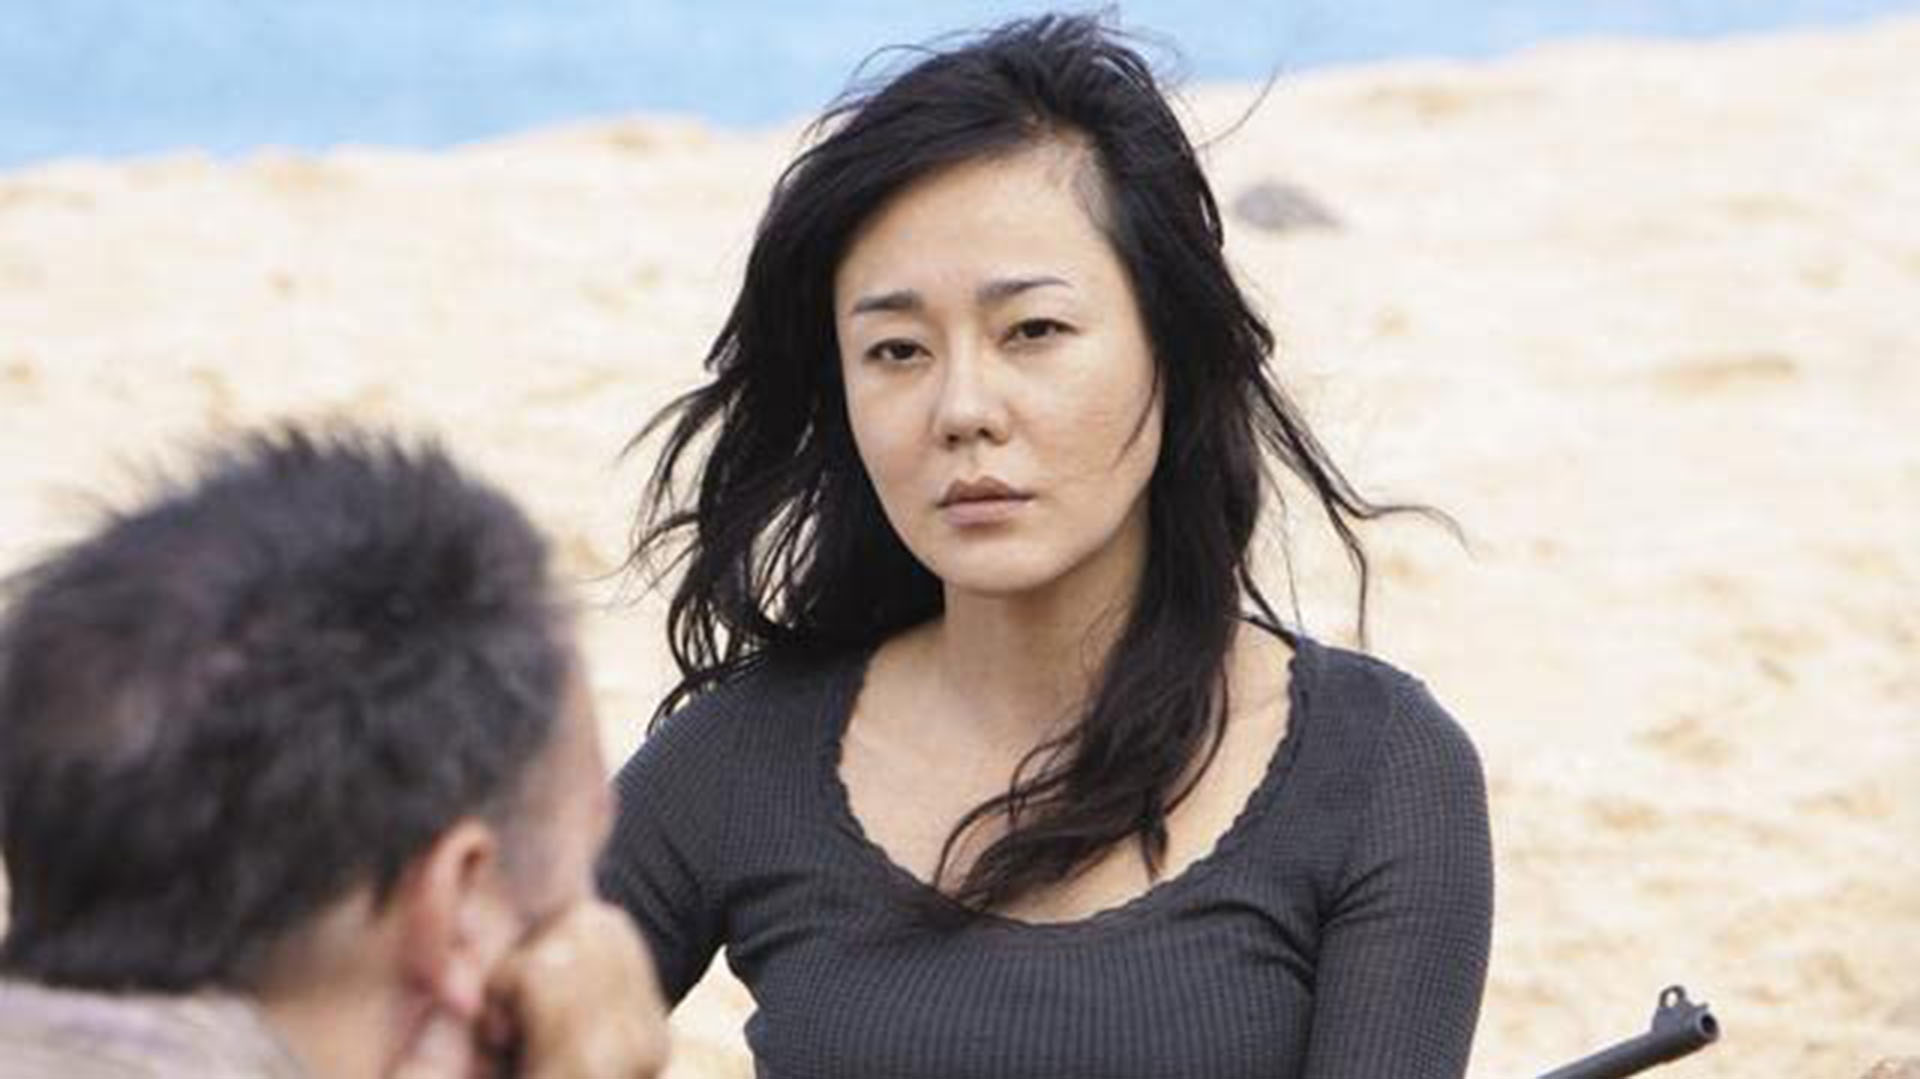  Kim Yunjin como Sun en la serie "Lost" que finalizó en 2010